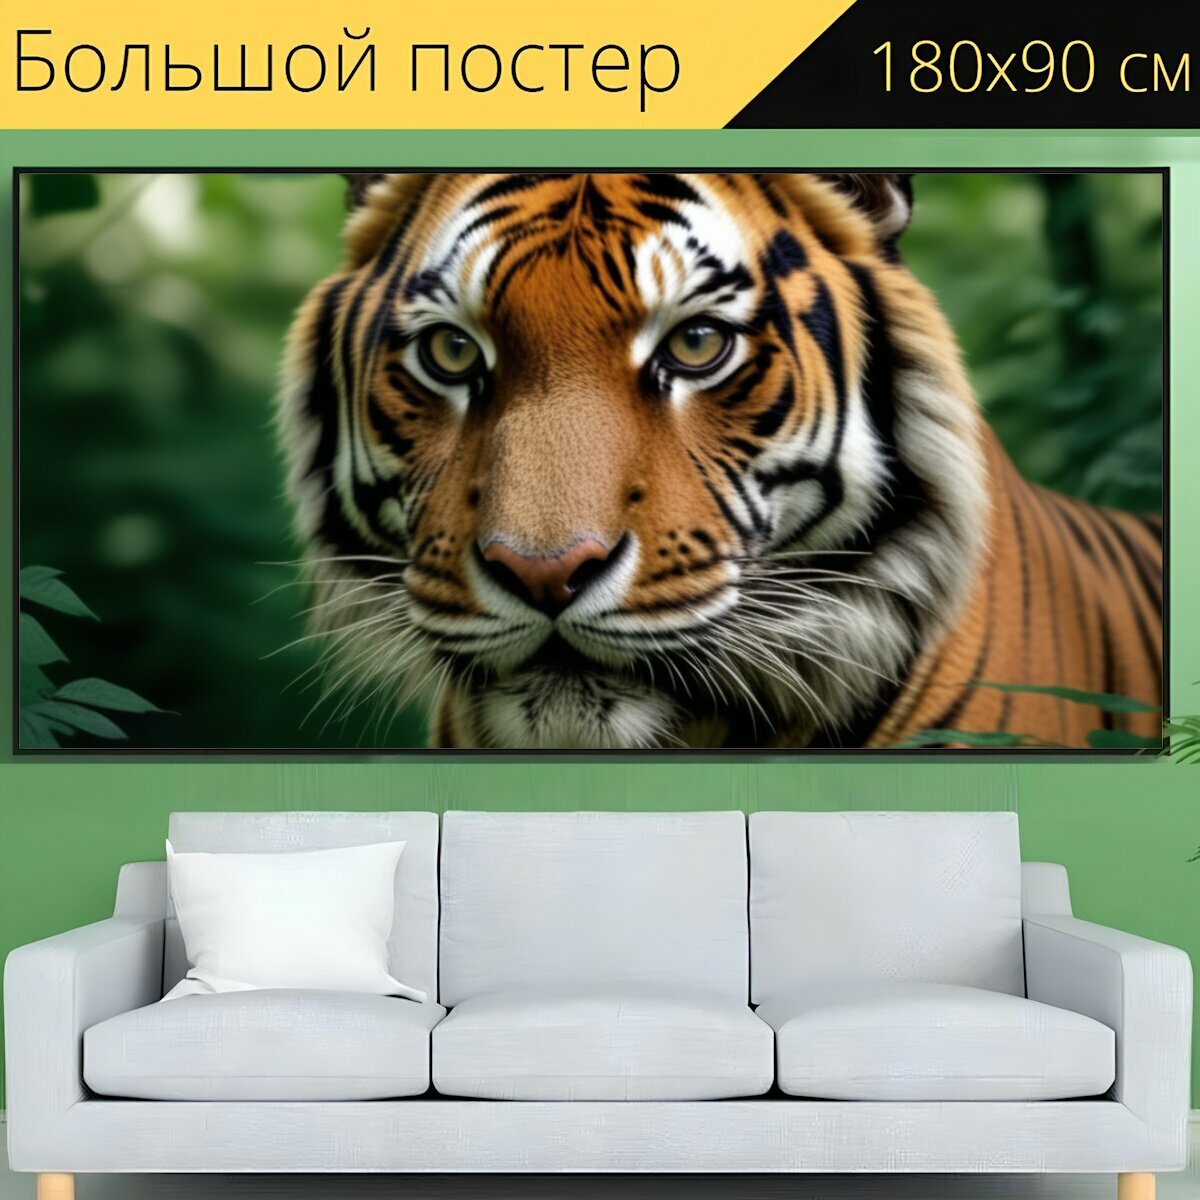 Большой постер любителям природы "Животные, тигр, крупным планом" 180 x 90 см. для интерьера на стену